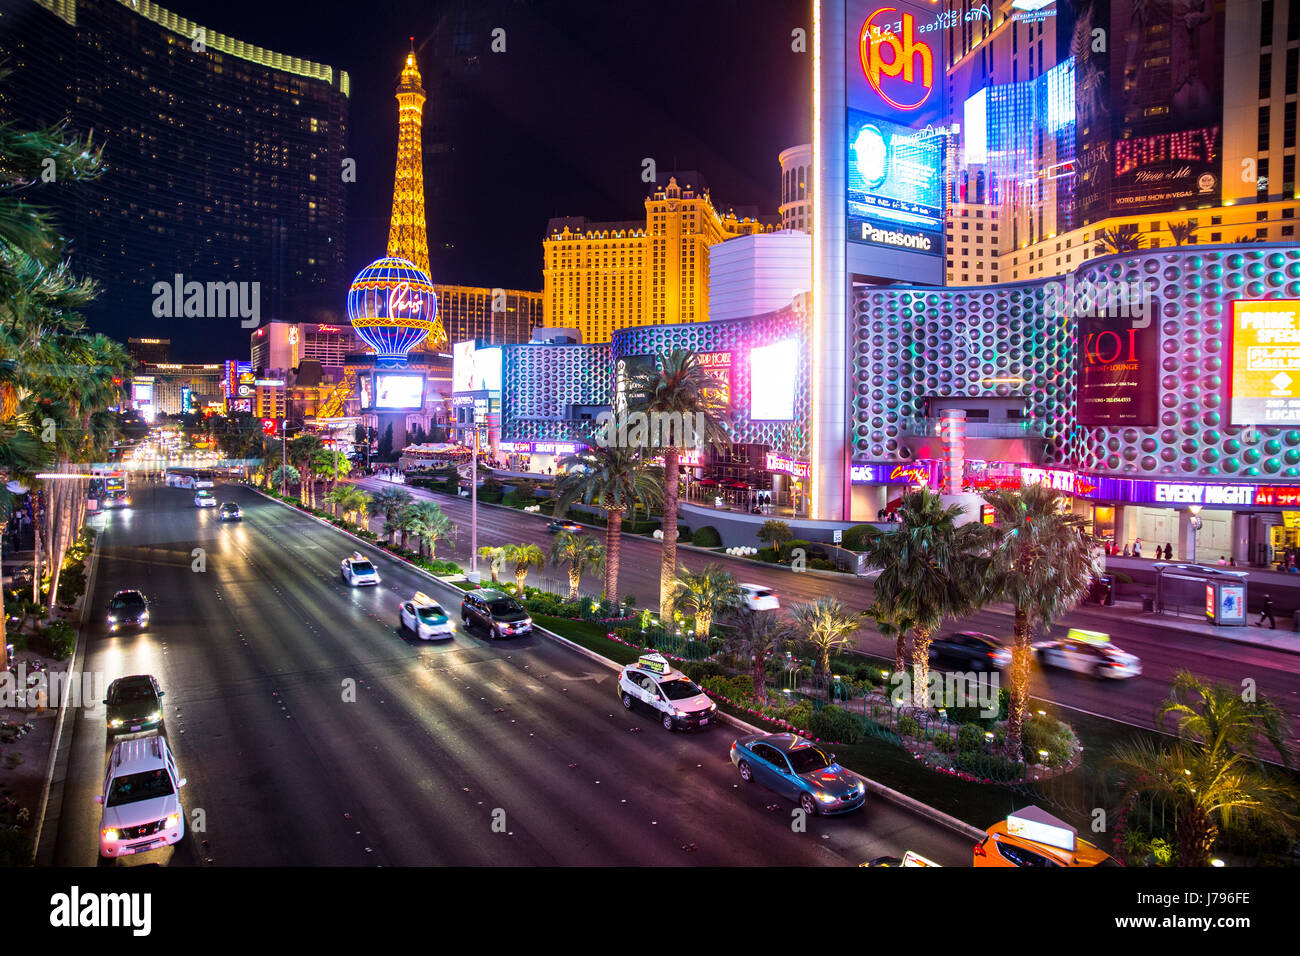 LAS VEGAS, NEVADA - Maggio 17, 2017: Las Vegas Boulevard illuminata di notte con hotels e resorts casinò in vista. Foto Stock